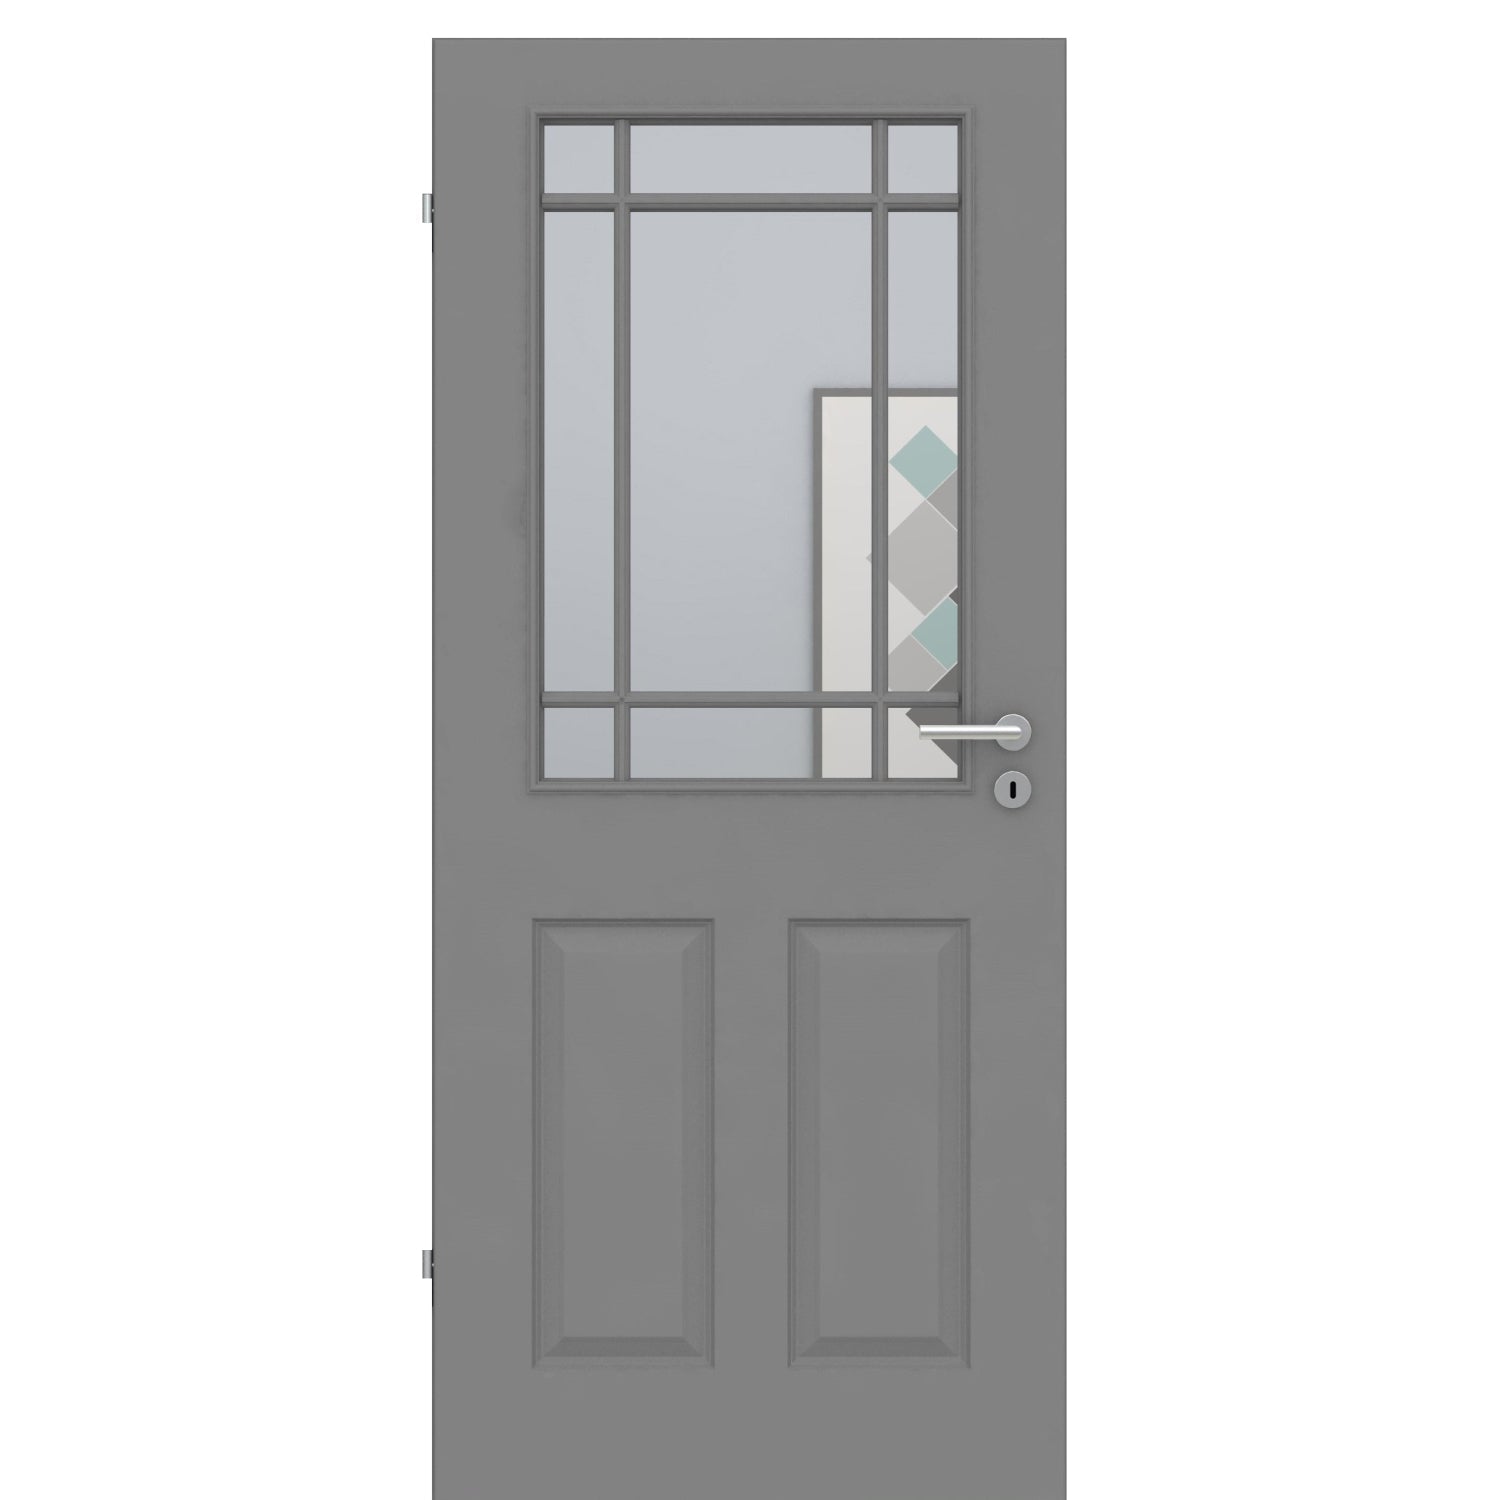 Zimmertür mit Lichtausschnitt mit Sprossenrahmen klassisch grau 4 Kassetten Designkante - Modell Stiltür K47LASPK